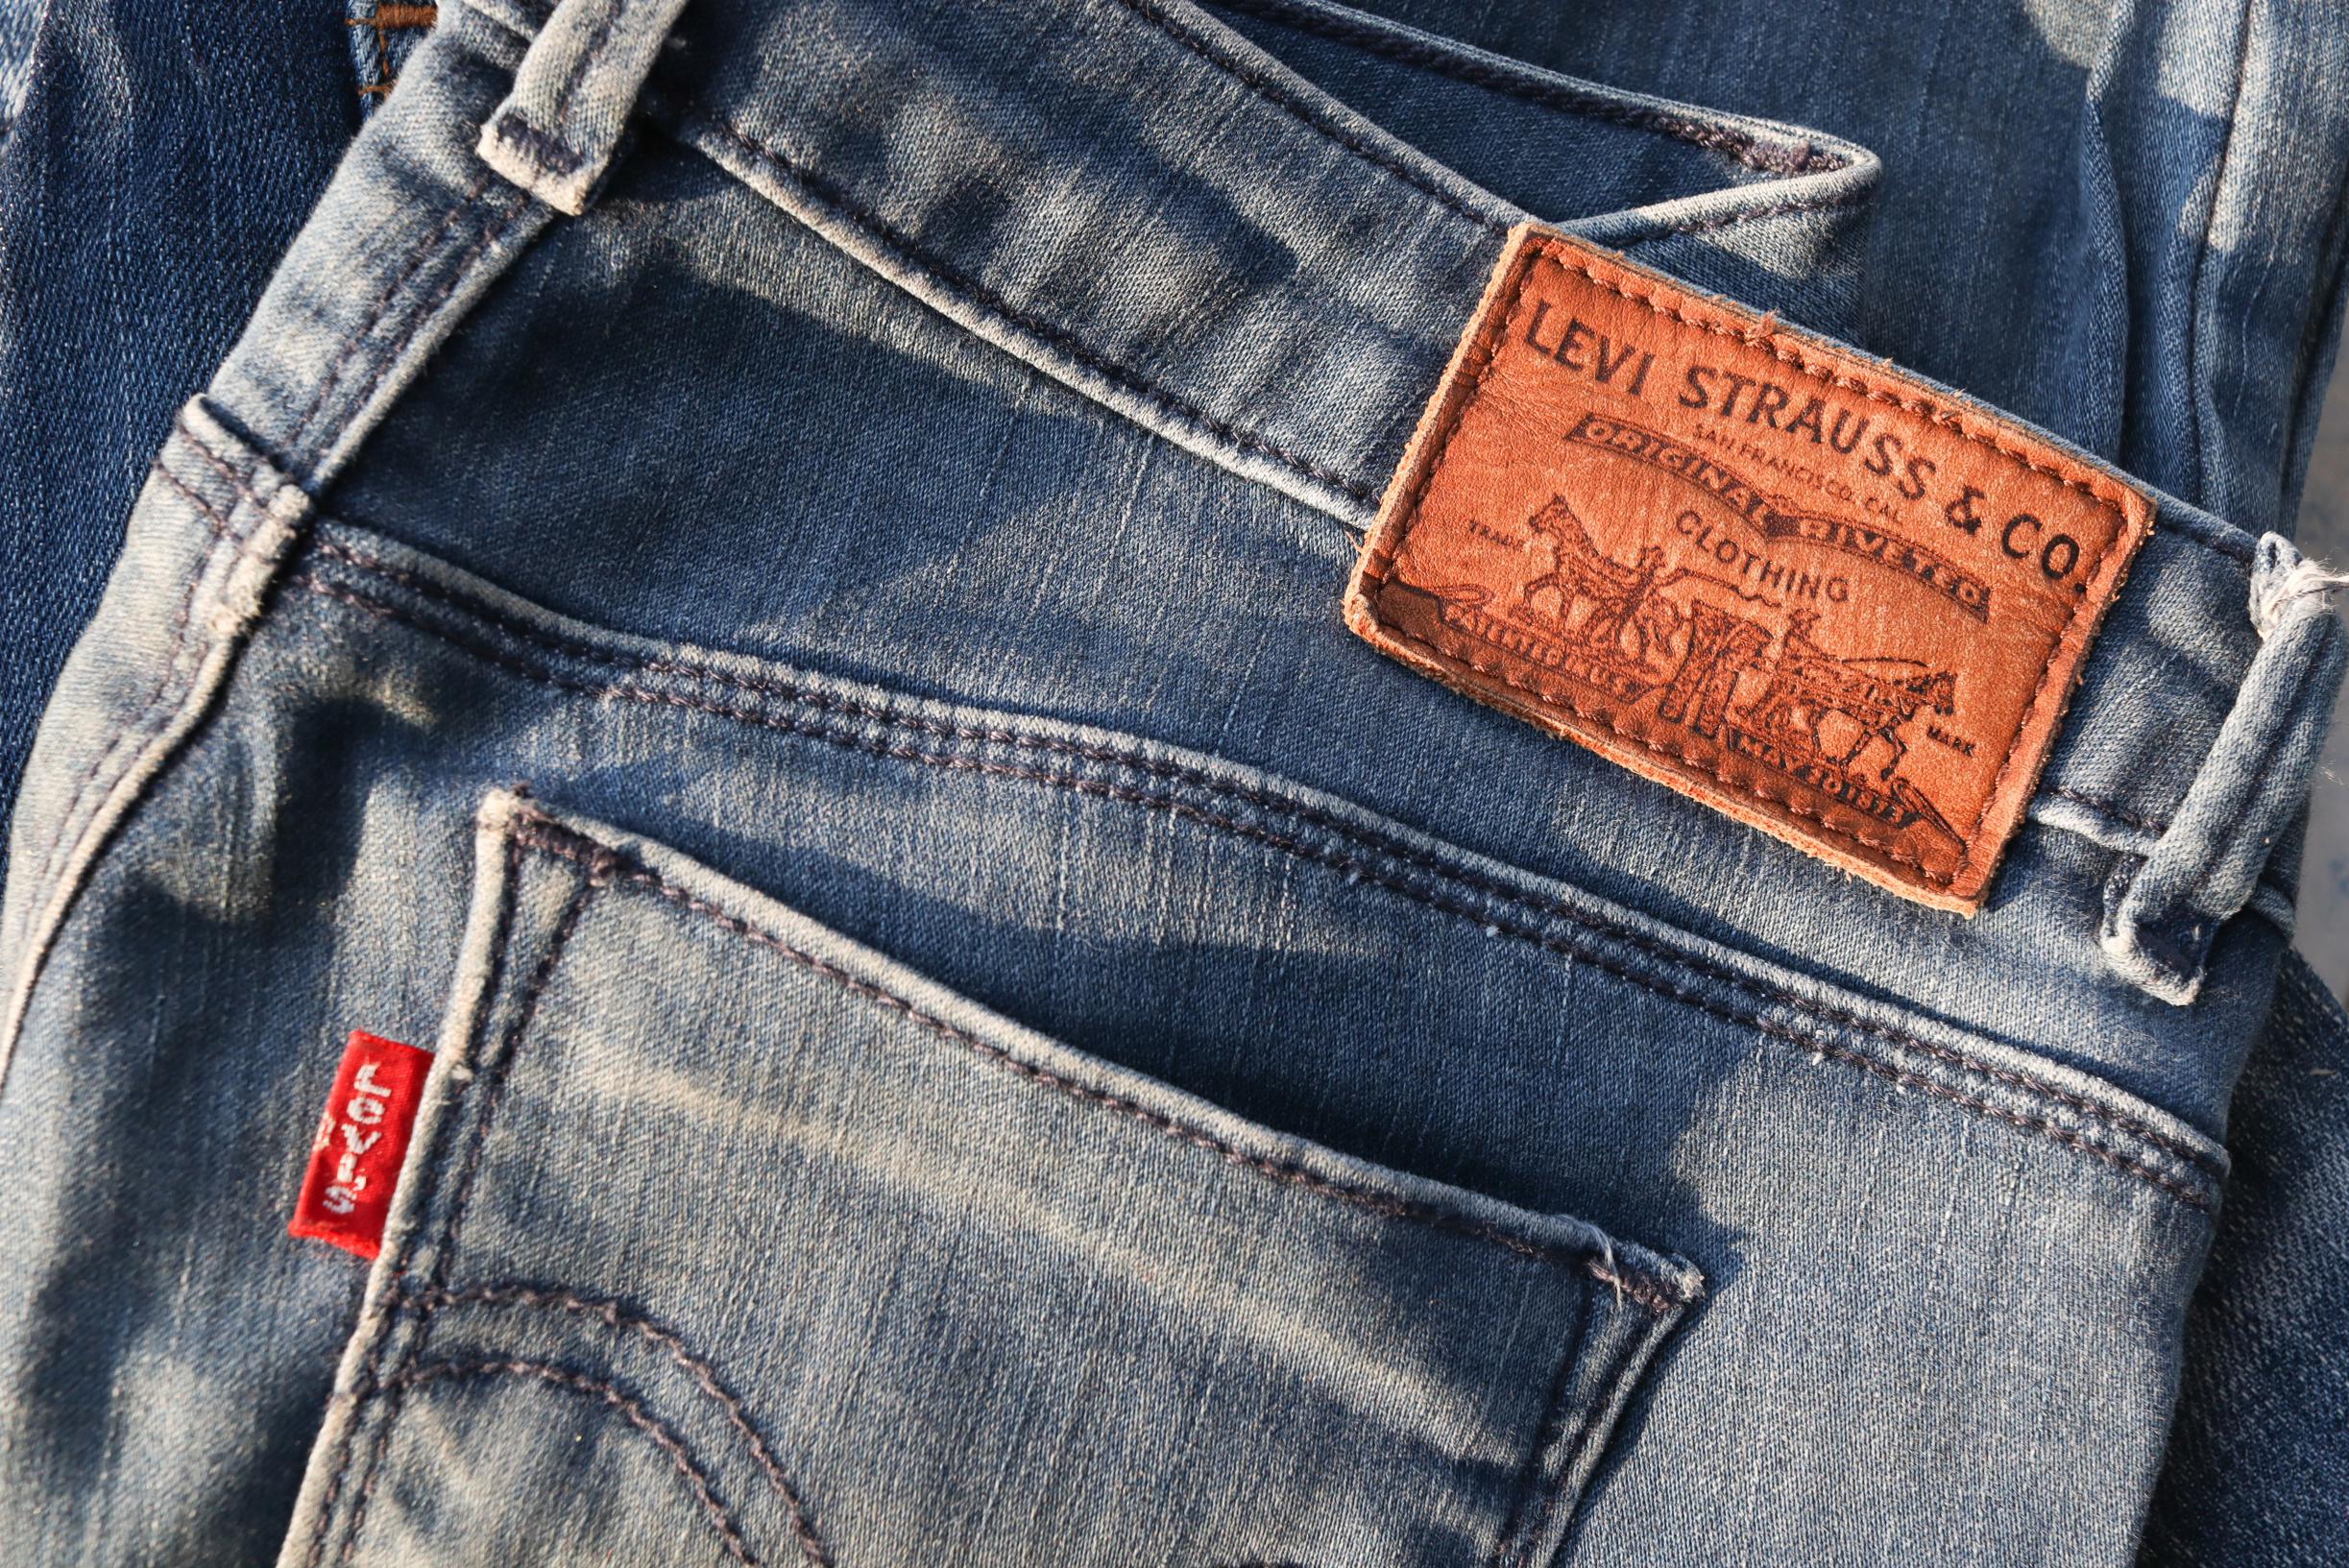 Kwaadaardig Marine informeel Levi's jeans uit de jaren 1880 geveild voor maar liefst 76.000 dollar | Het  Nieuwsblad Mobile